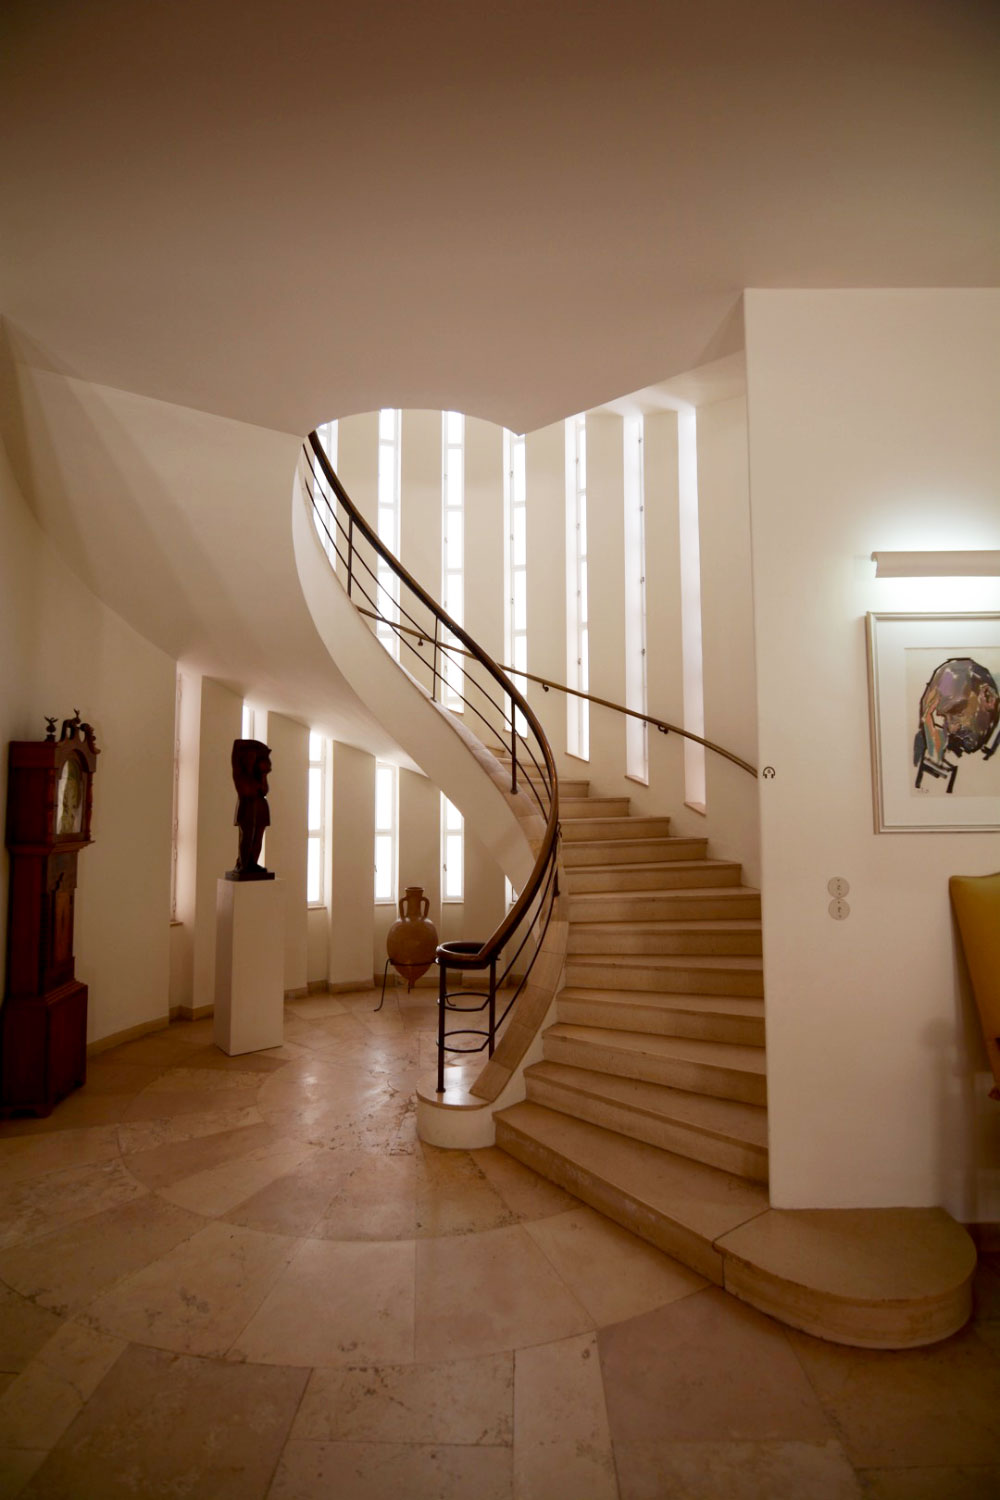 chaim weizmann's home erich mendelsohn's staircase